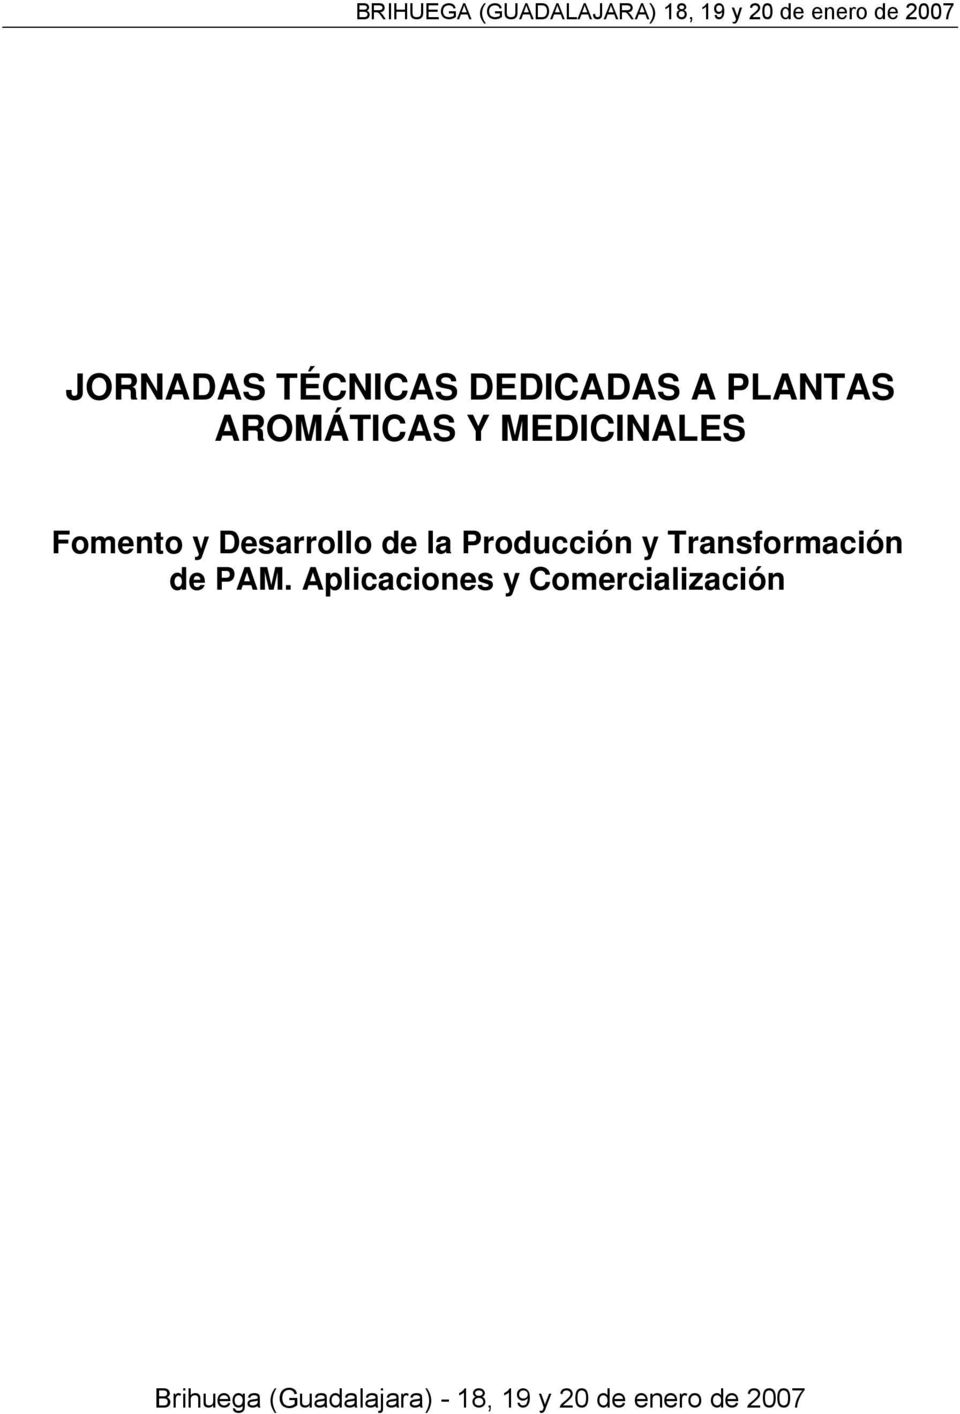 Desarrollo de la Producción y Transformación de PAM.